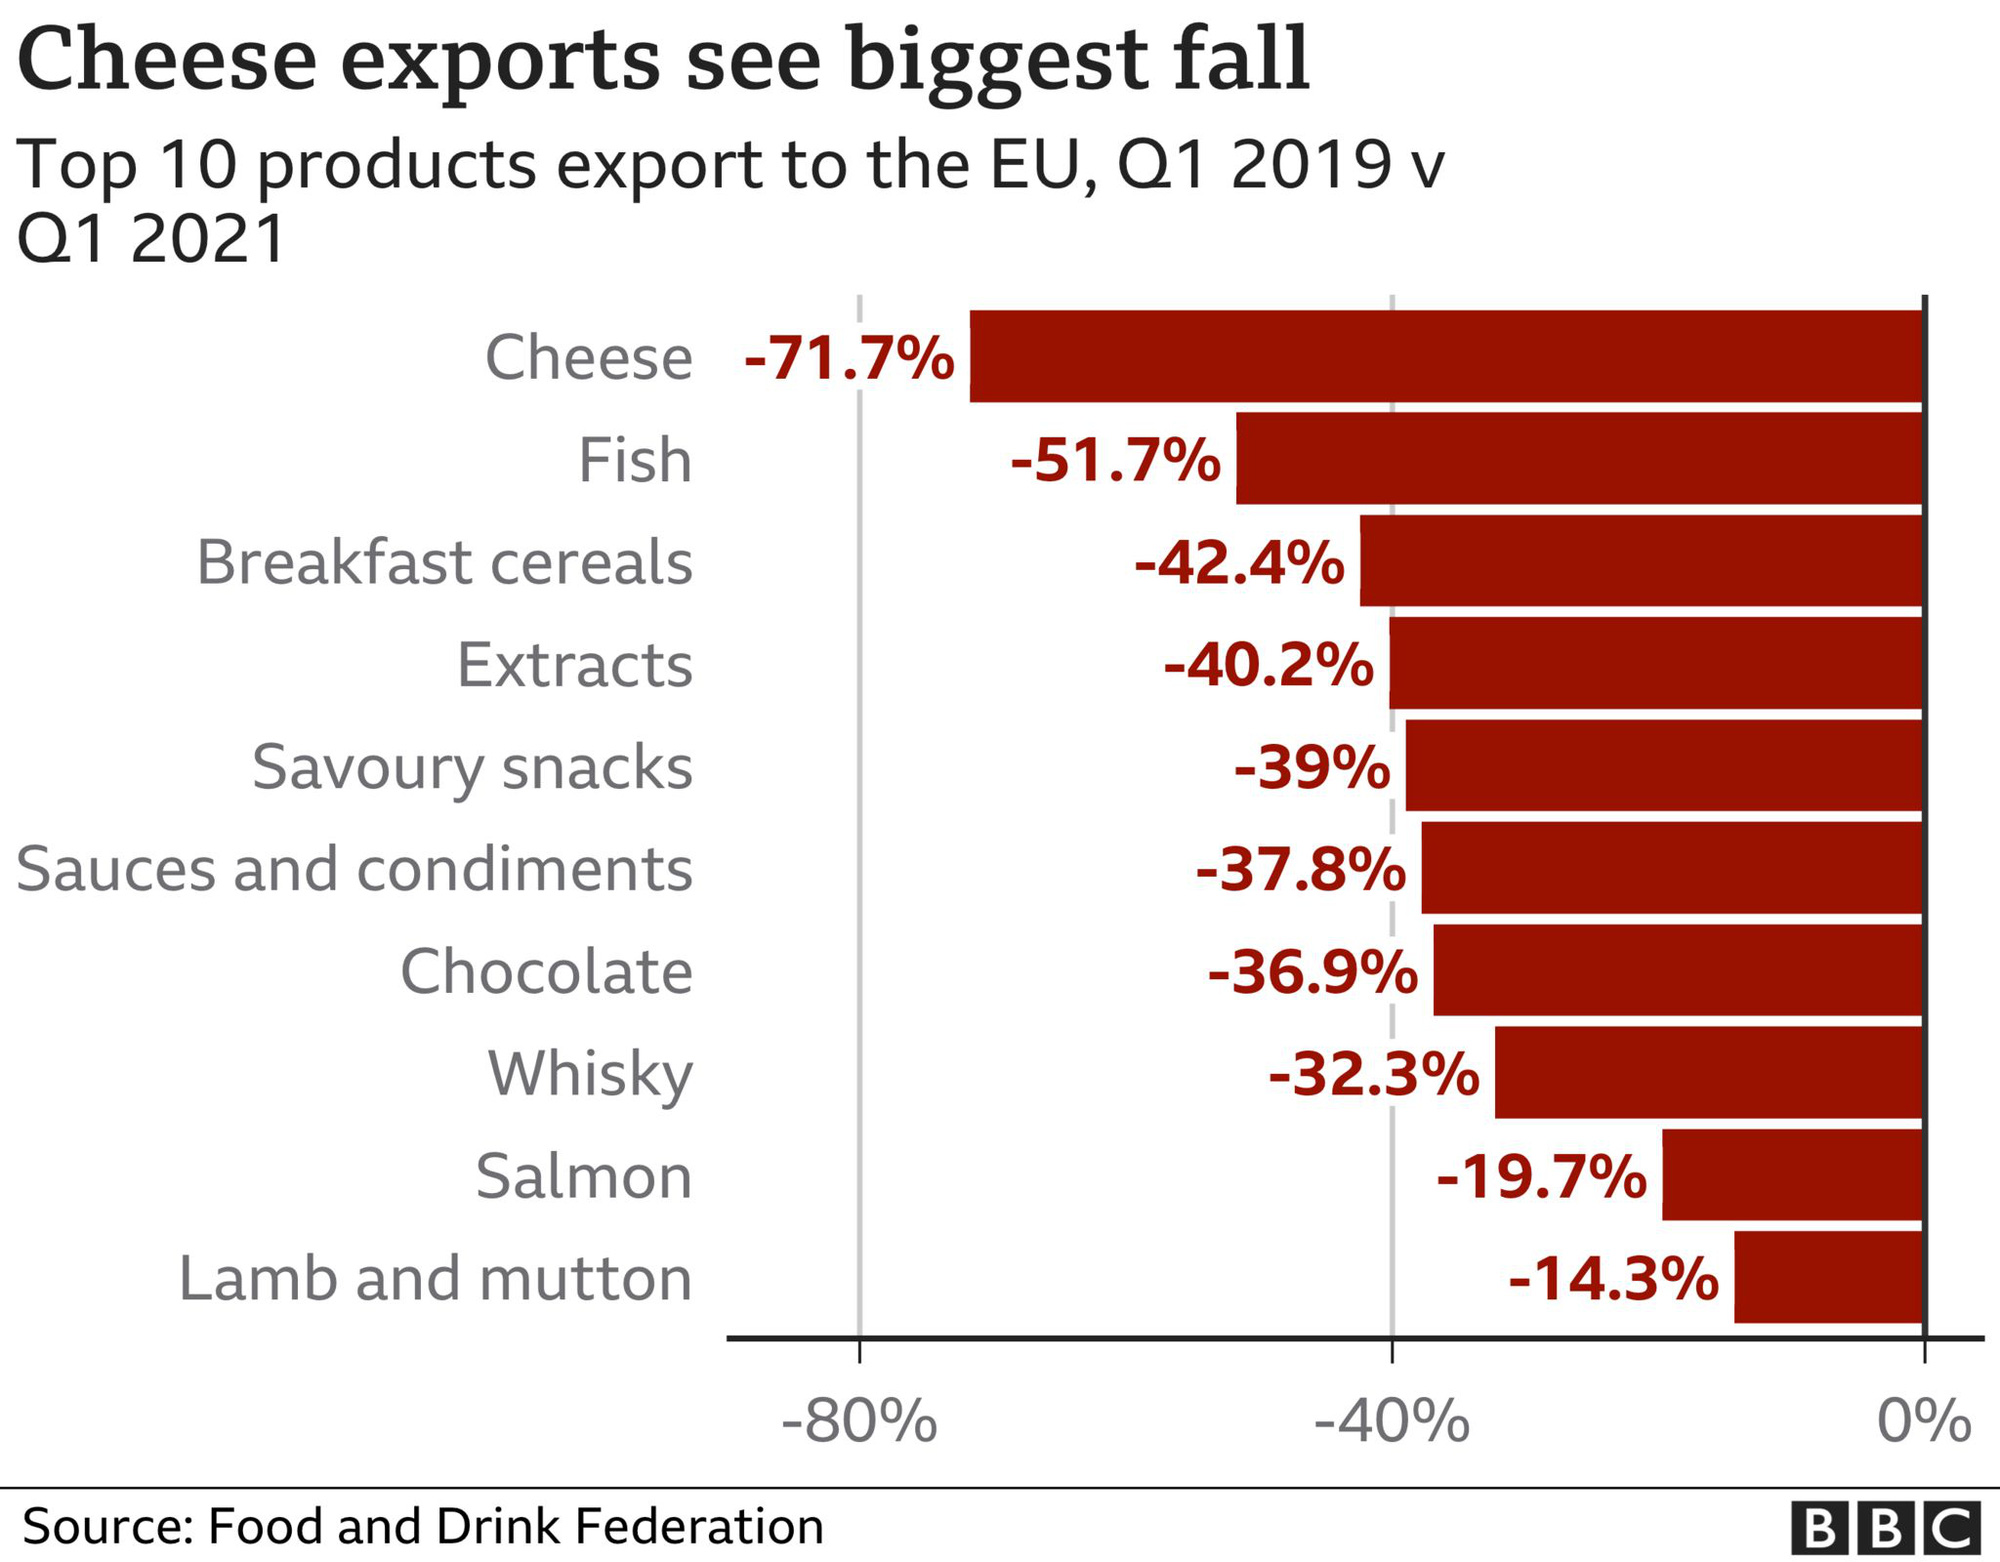 Kim ngạch xuất khẩu thực phẩm, đồ uống từ Anh vào EU giảm gần một nửa sau Brexit - Ảnh 1.